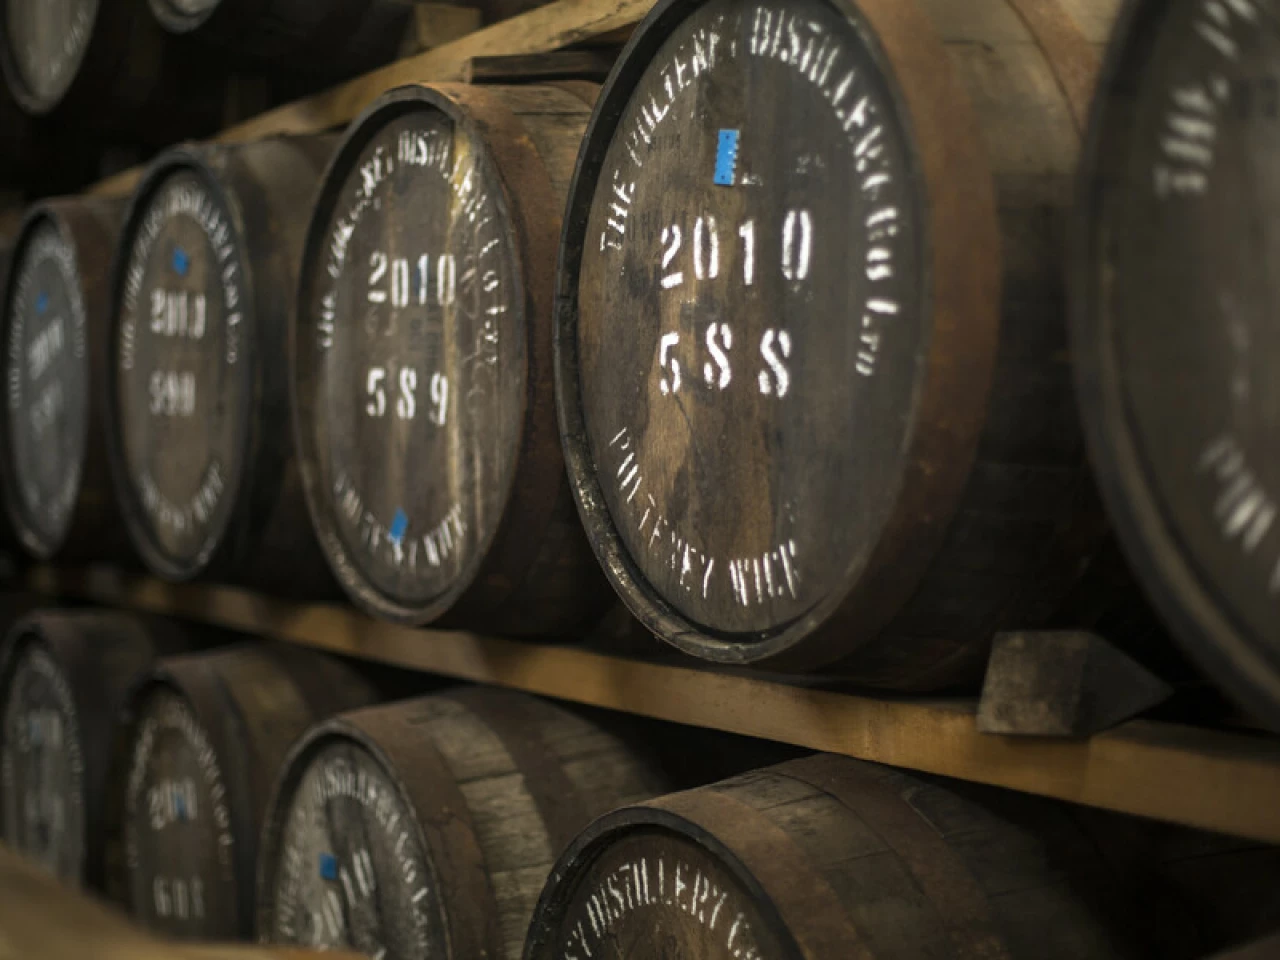 Old Pulteney Whisky Distillery filled Casks